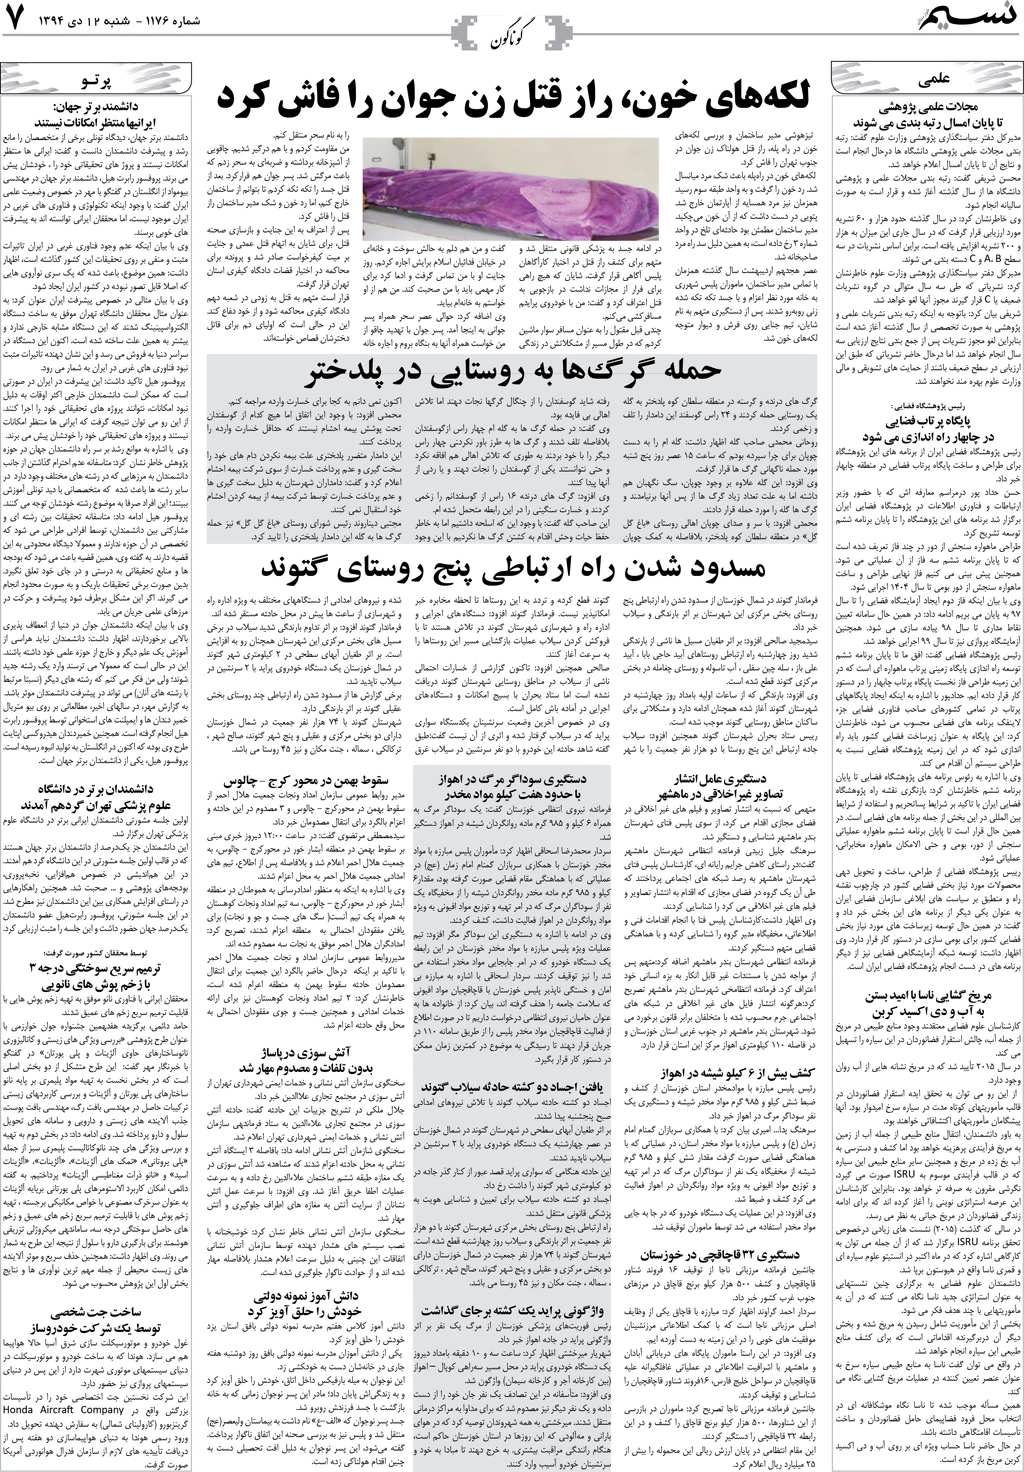 صفحه گوناگون روزنامه نسیم شماره 1176